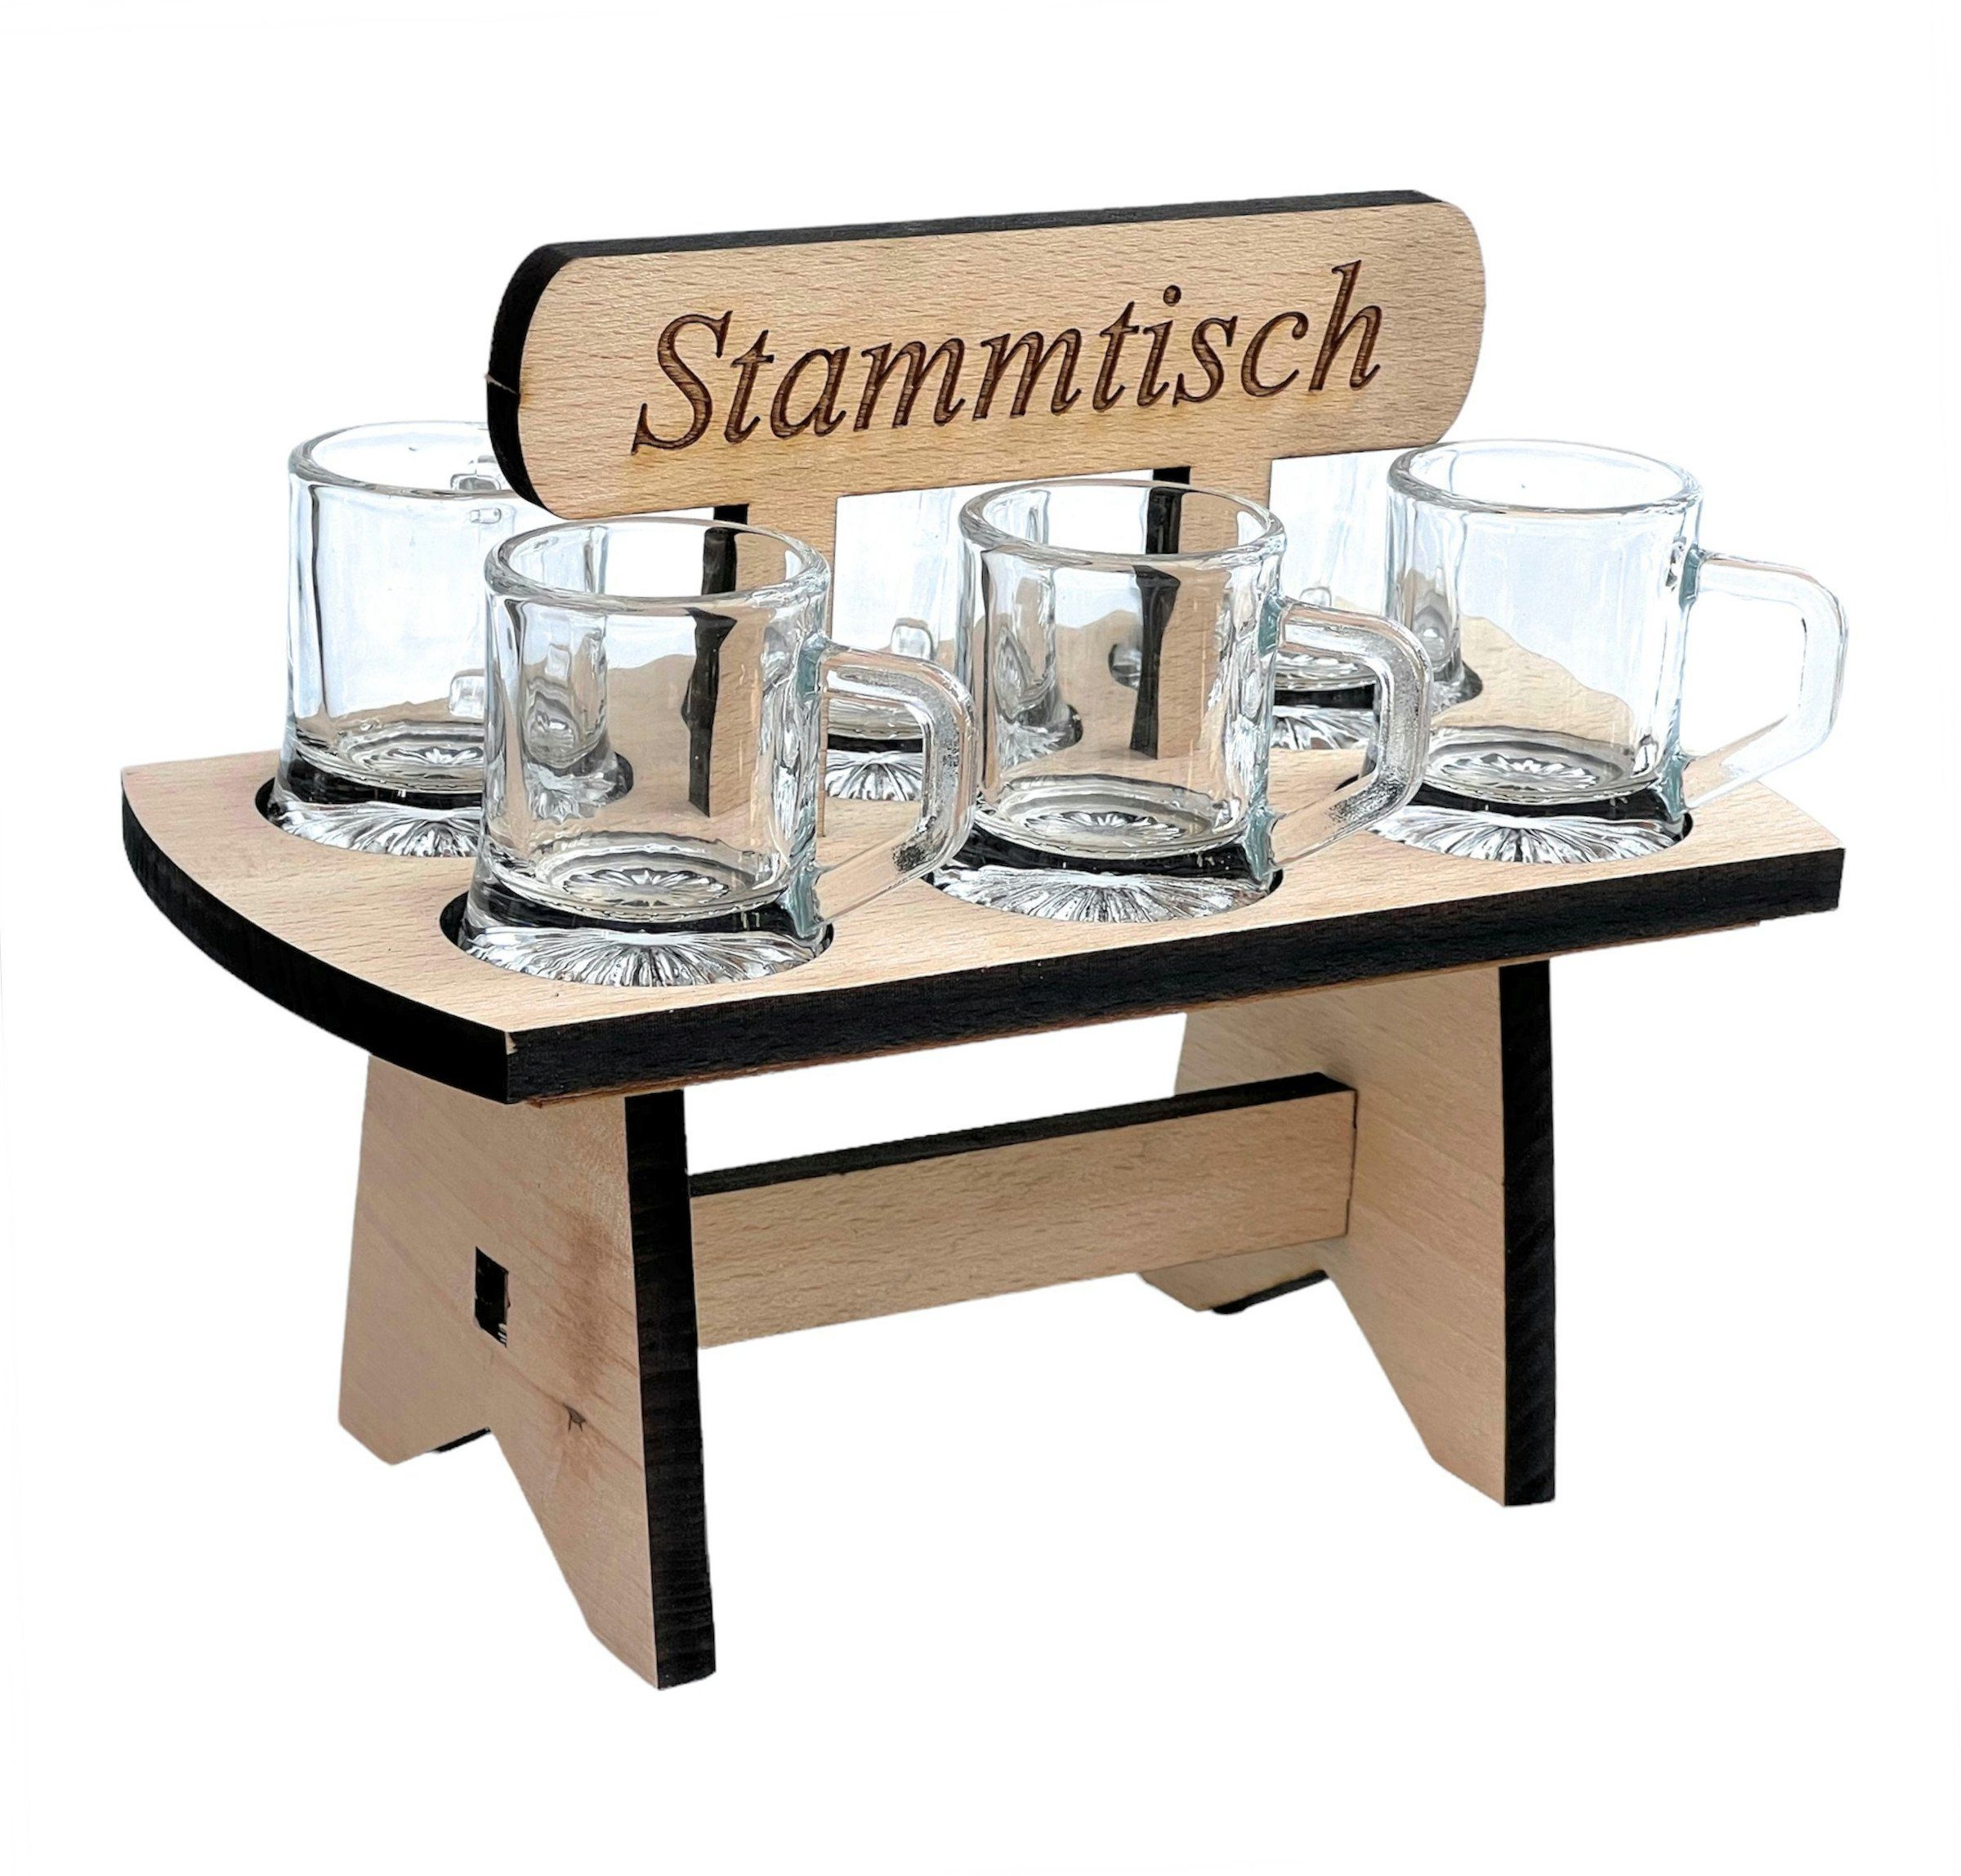 DanDiBo Schnapsglas Schnapsbrett 20 cm mit Gravur Stammtisch mit 6 Скло Schnapslatte Schnapsleiste, prima als Geschenk für den Freund / Mann daheim